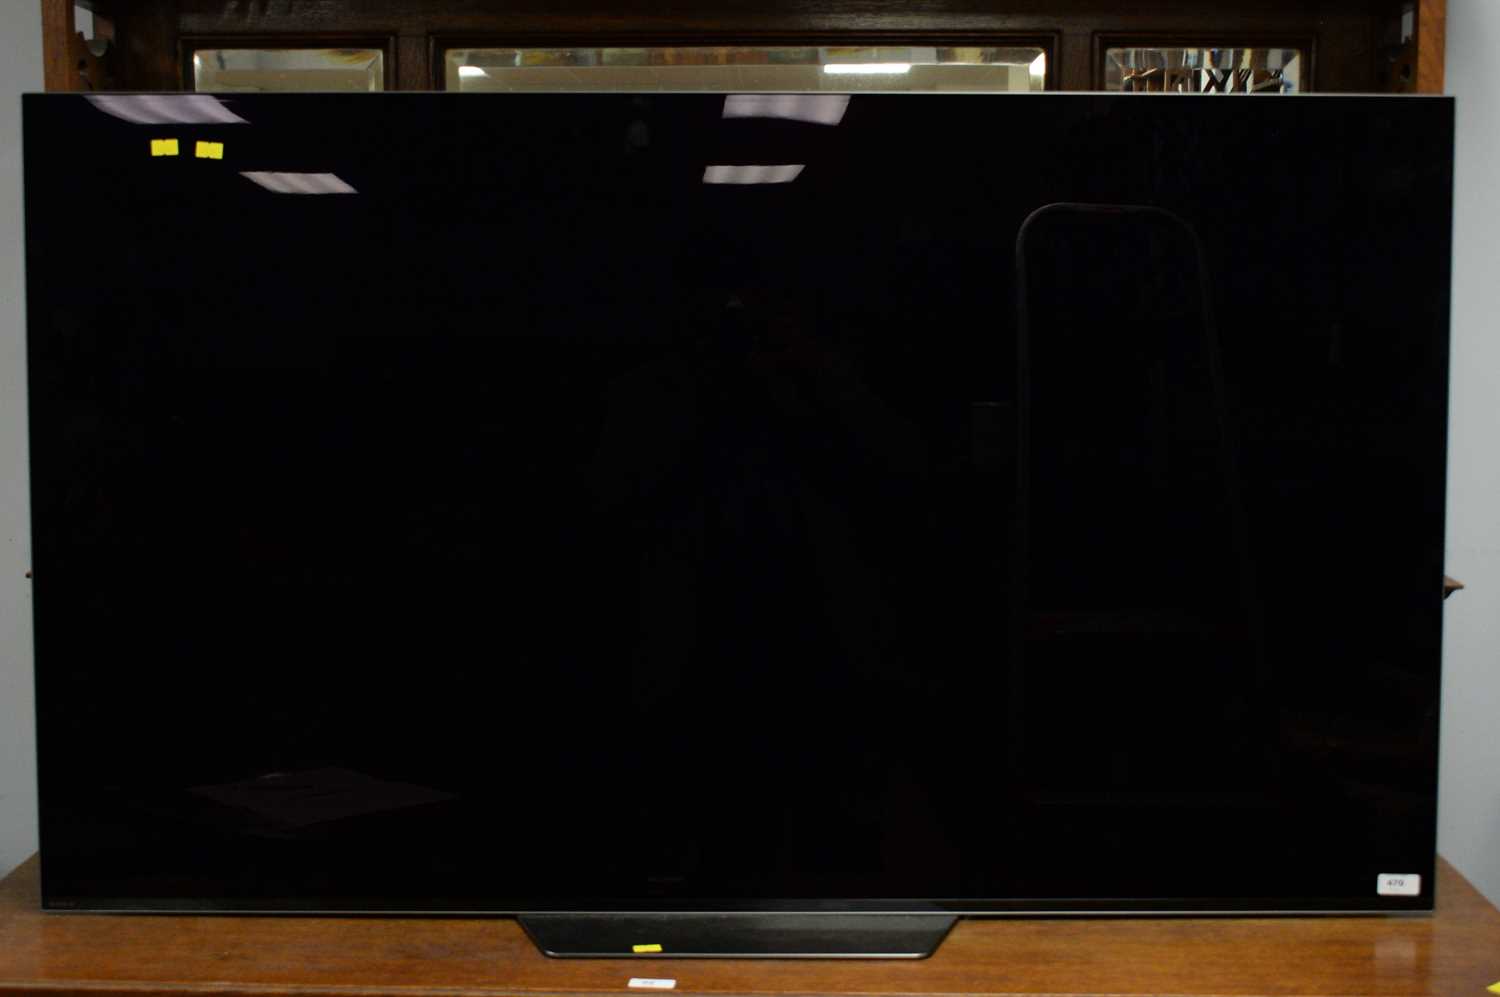 Lot 470 - Sony Bravia 55in. flat screen tv.